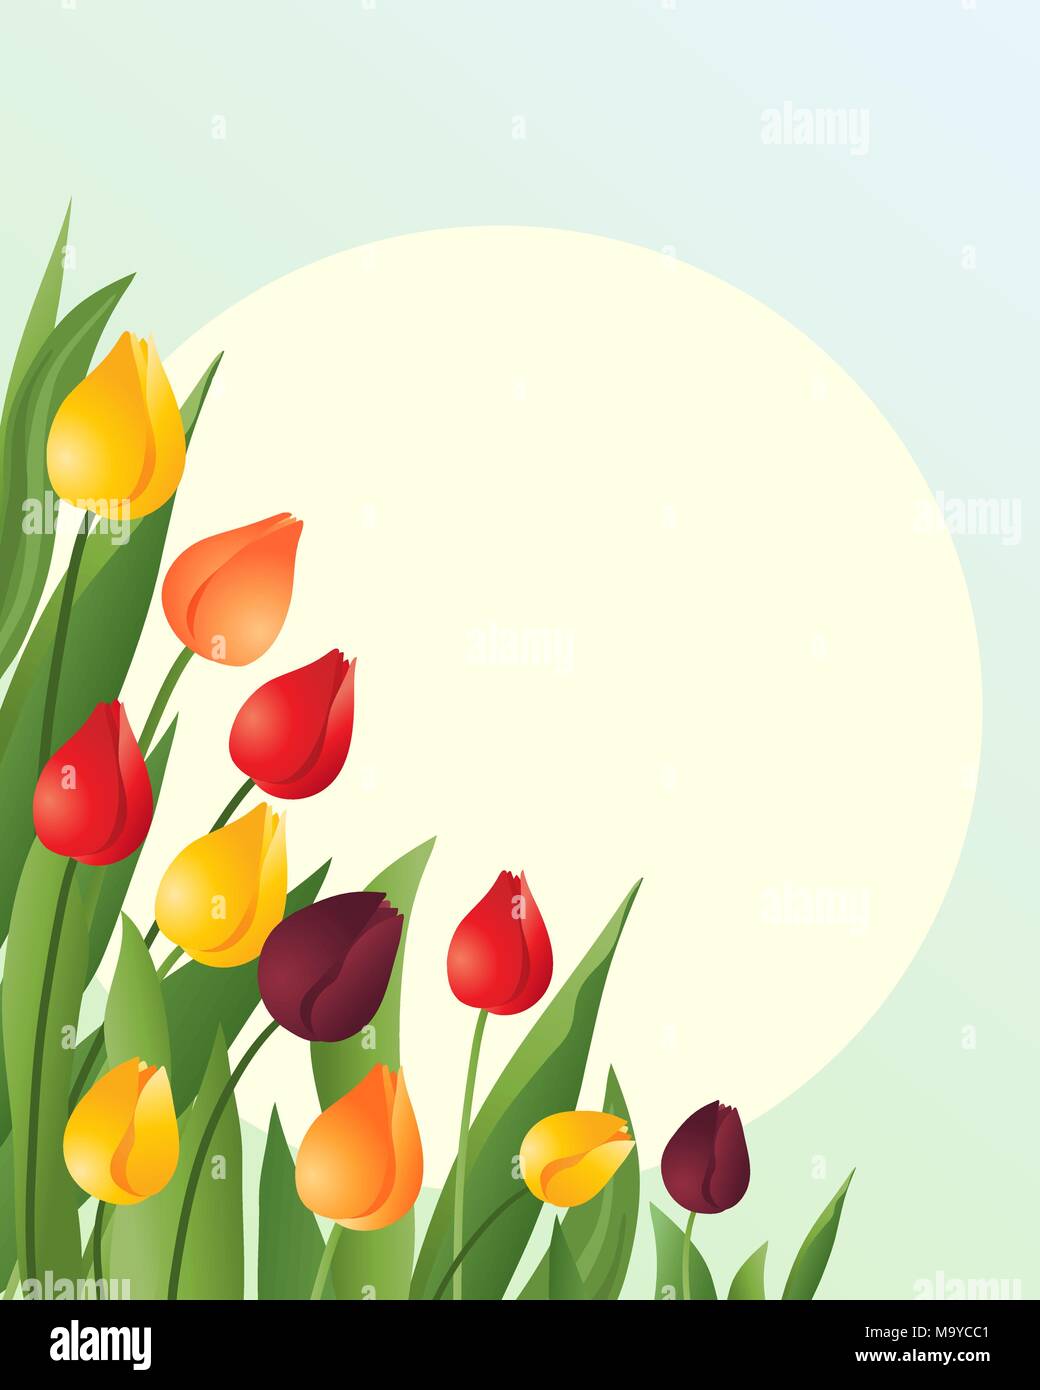 zur Veranschaulichung der roten, orangefarbenen und gelben Frühling Tulpen mit grünen Blättern auf einem blauen grünen Hintergrund mit eine große gelbe Sonne Stock Vektor